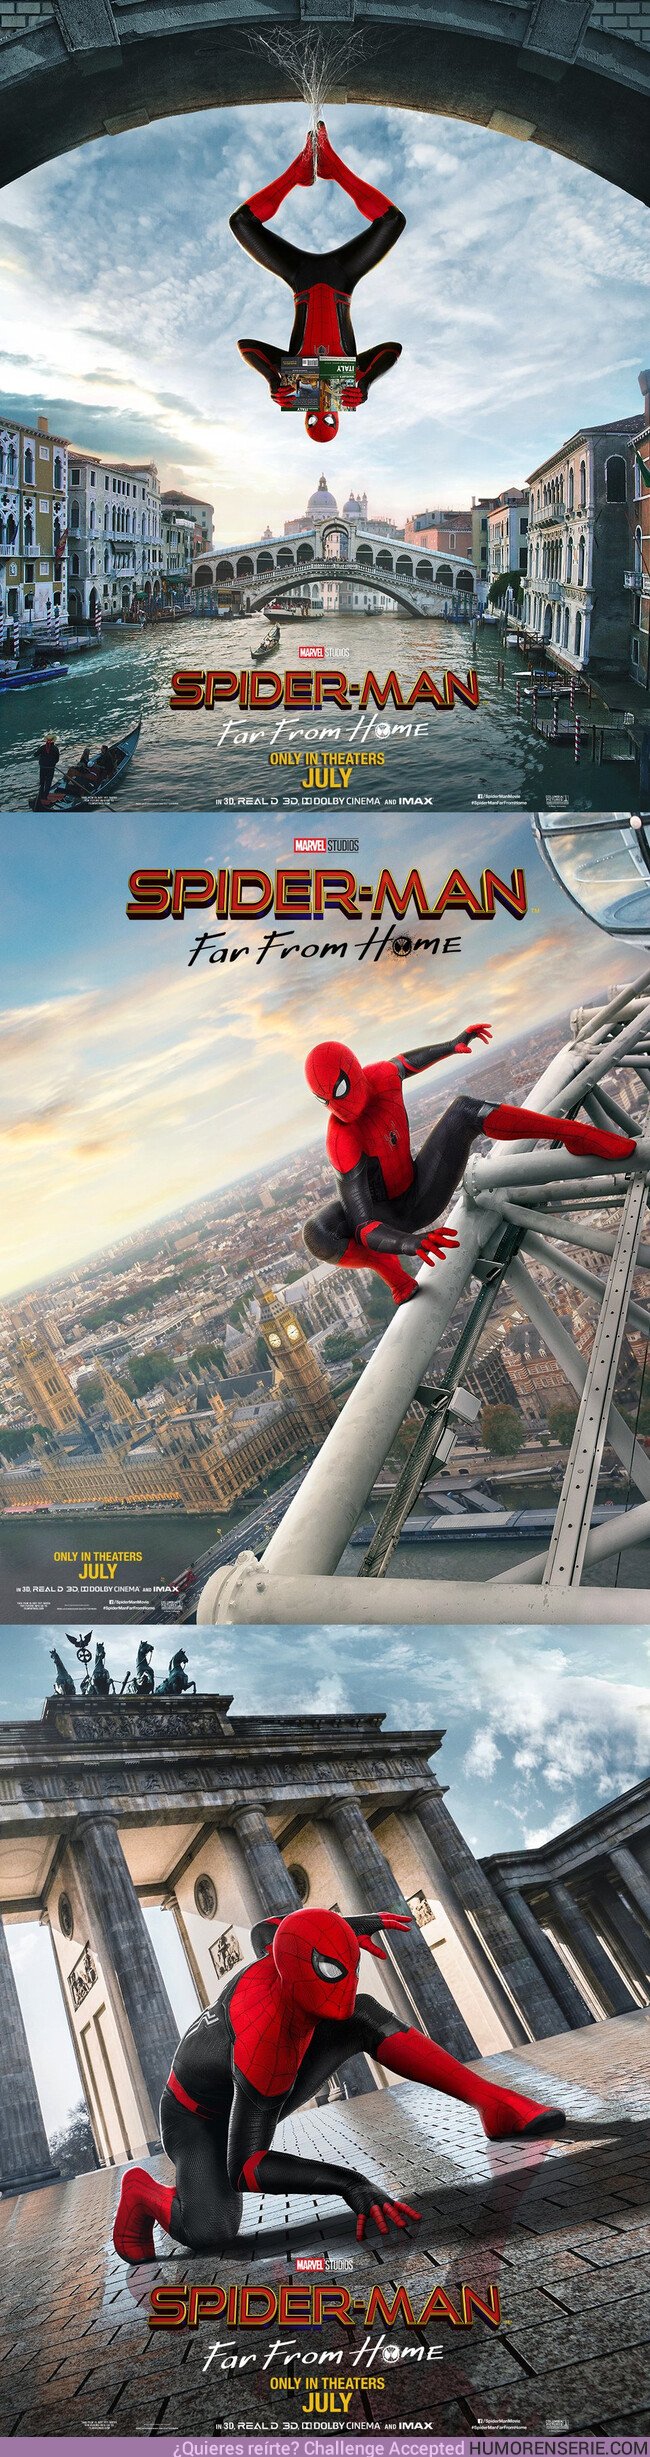 36353 - No te pierdas los tres nuevos pósters de Spider-man Far From Home